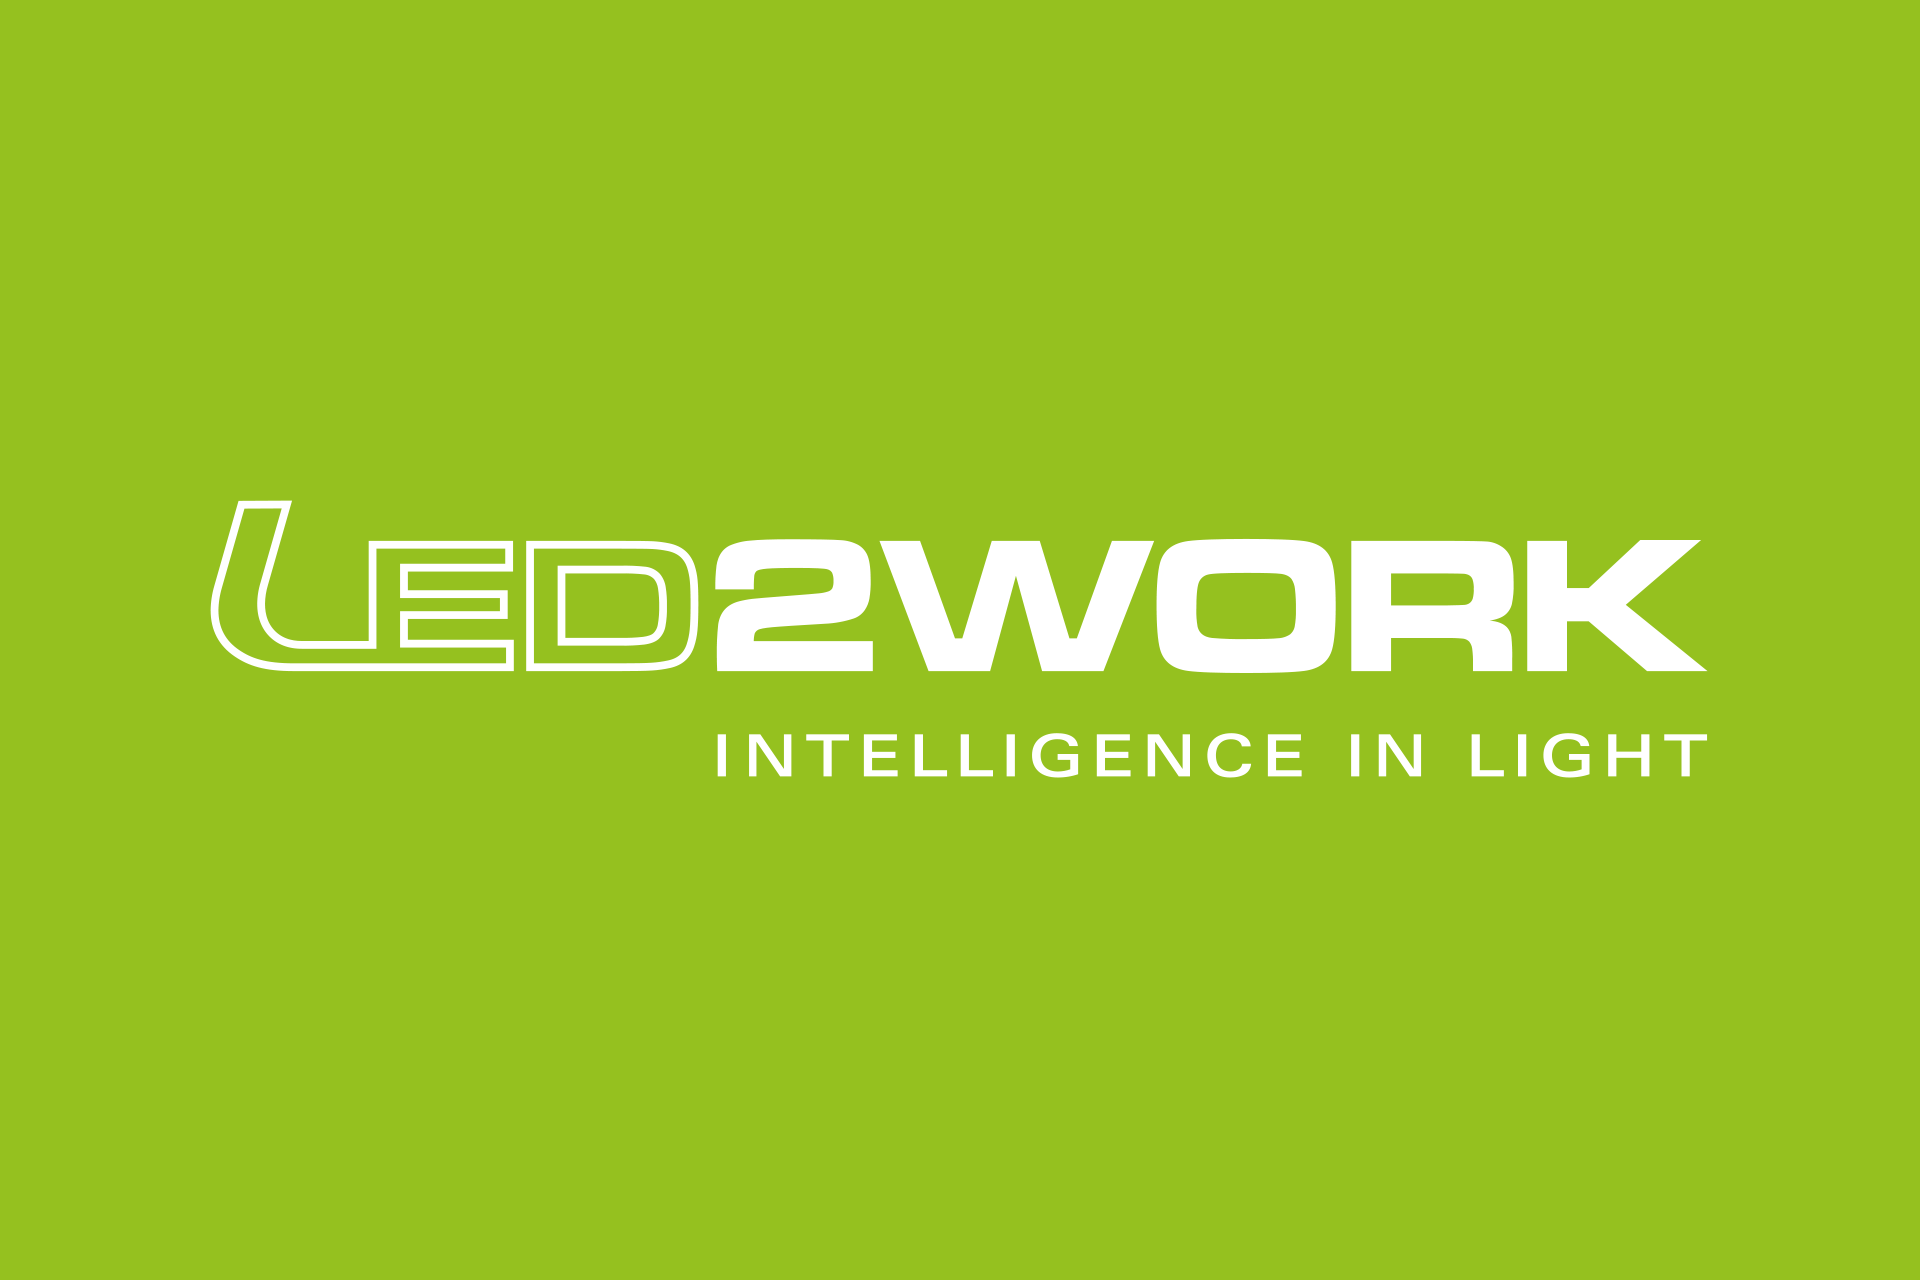 Digitalagentur bemoody Referenzen LED2WORK B2B Onlineshop